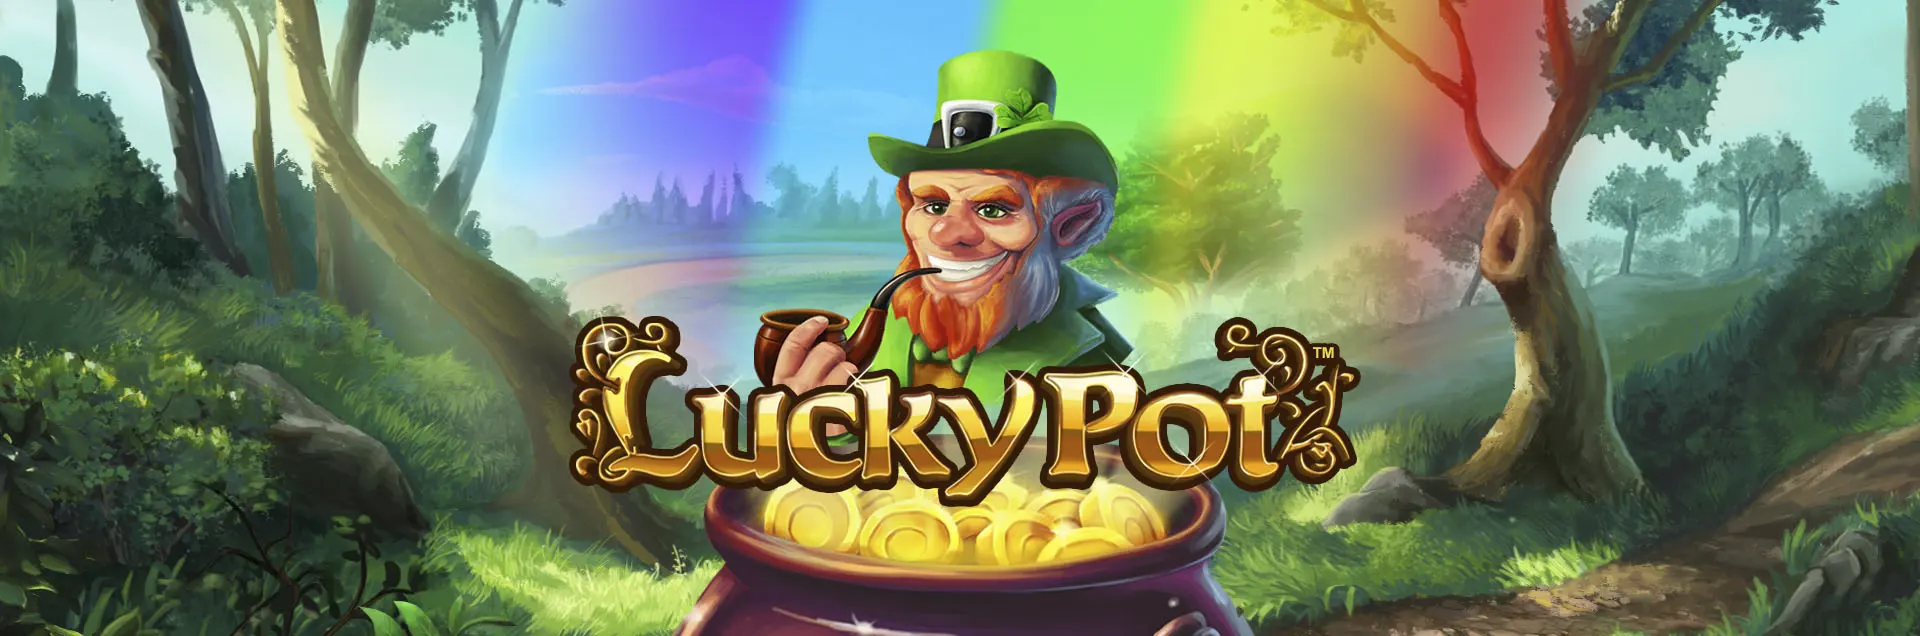 lucky pot